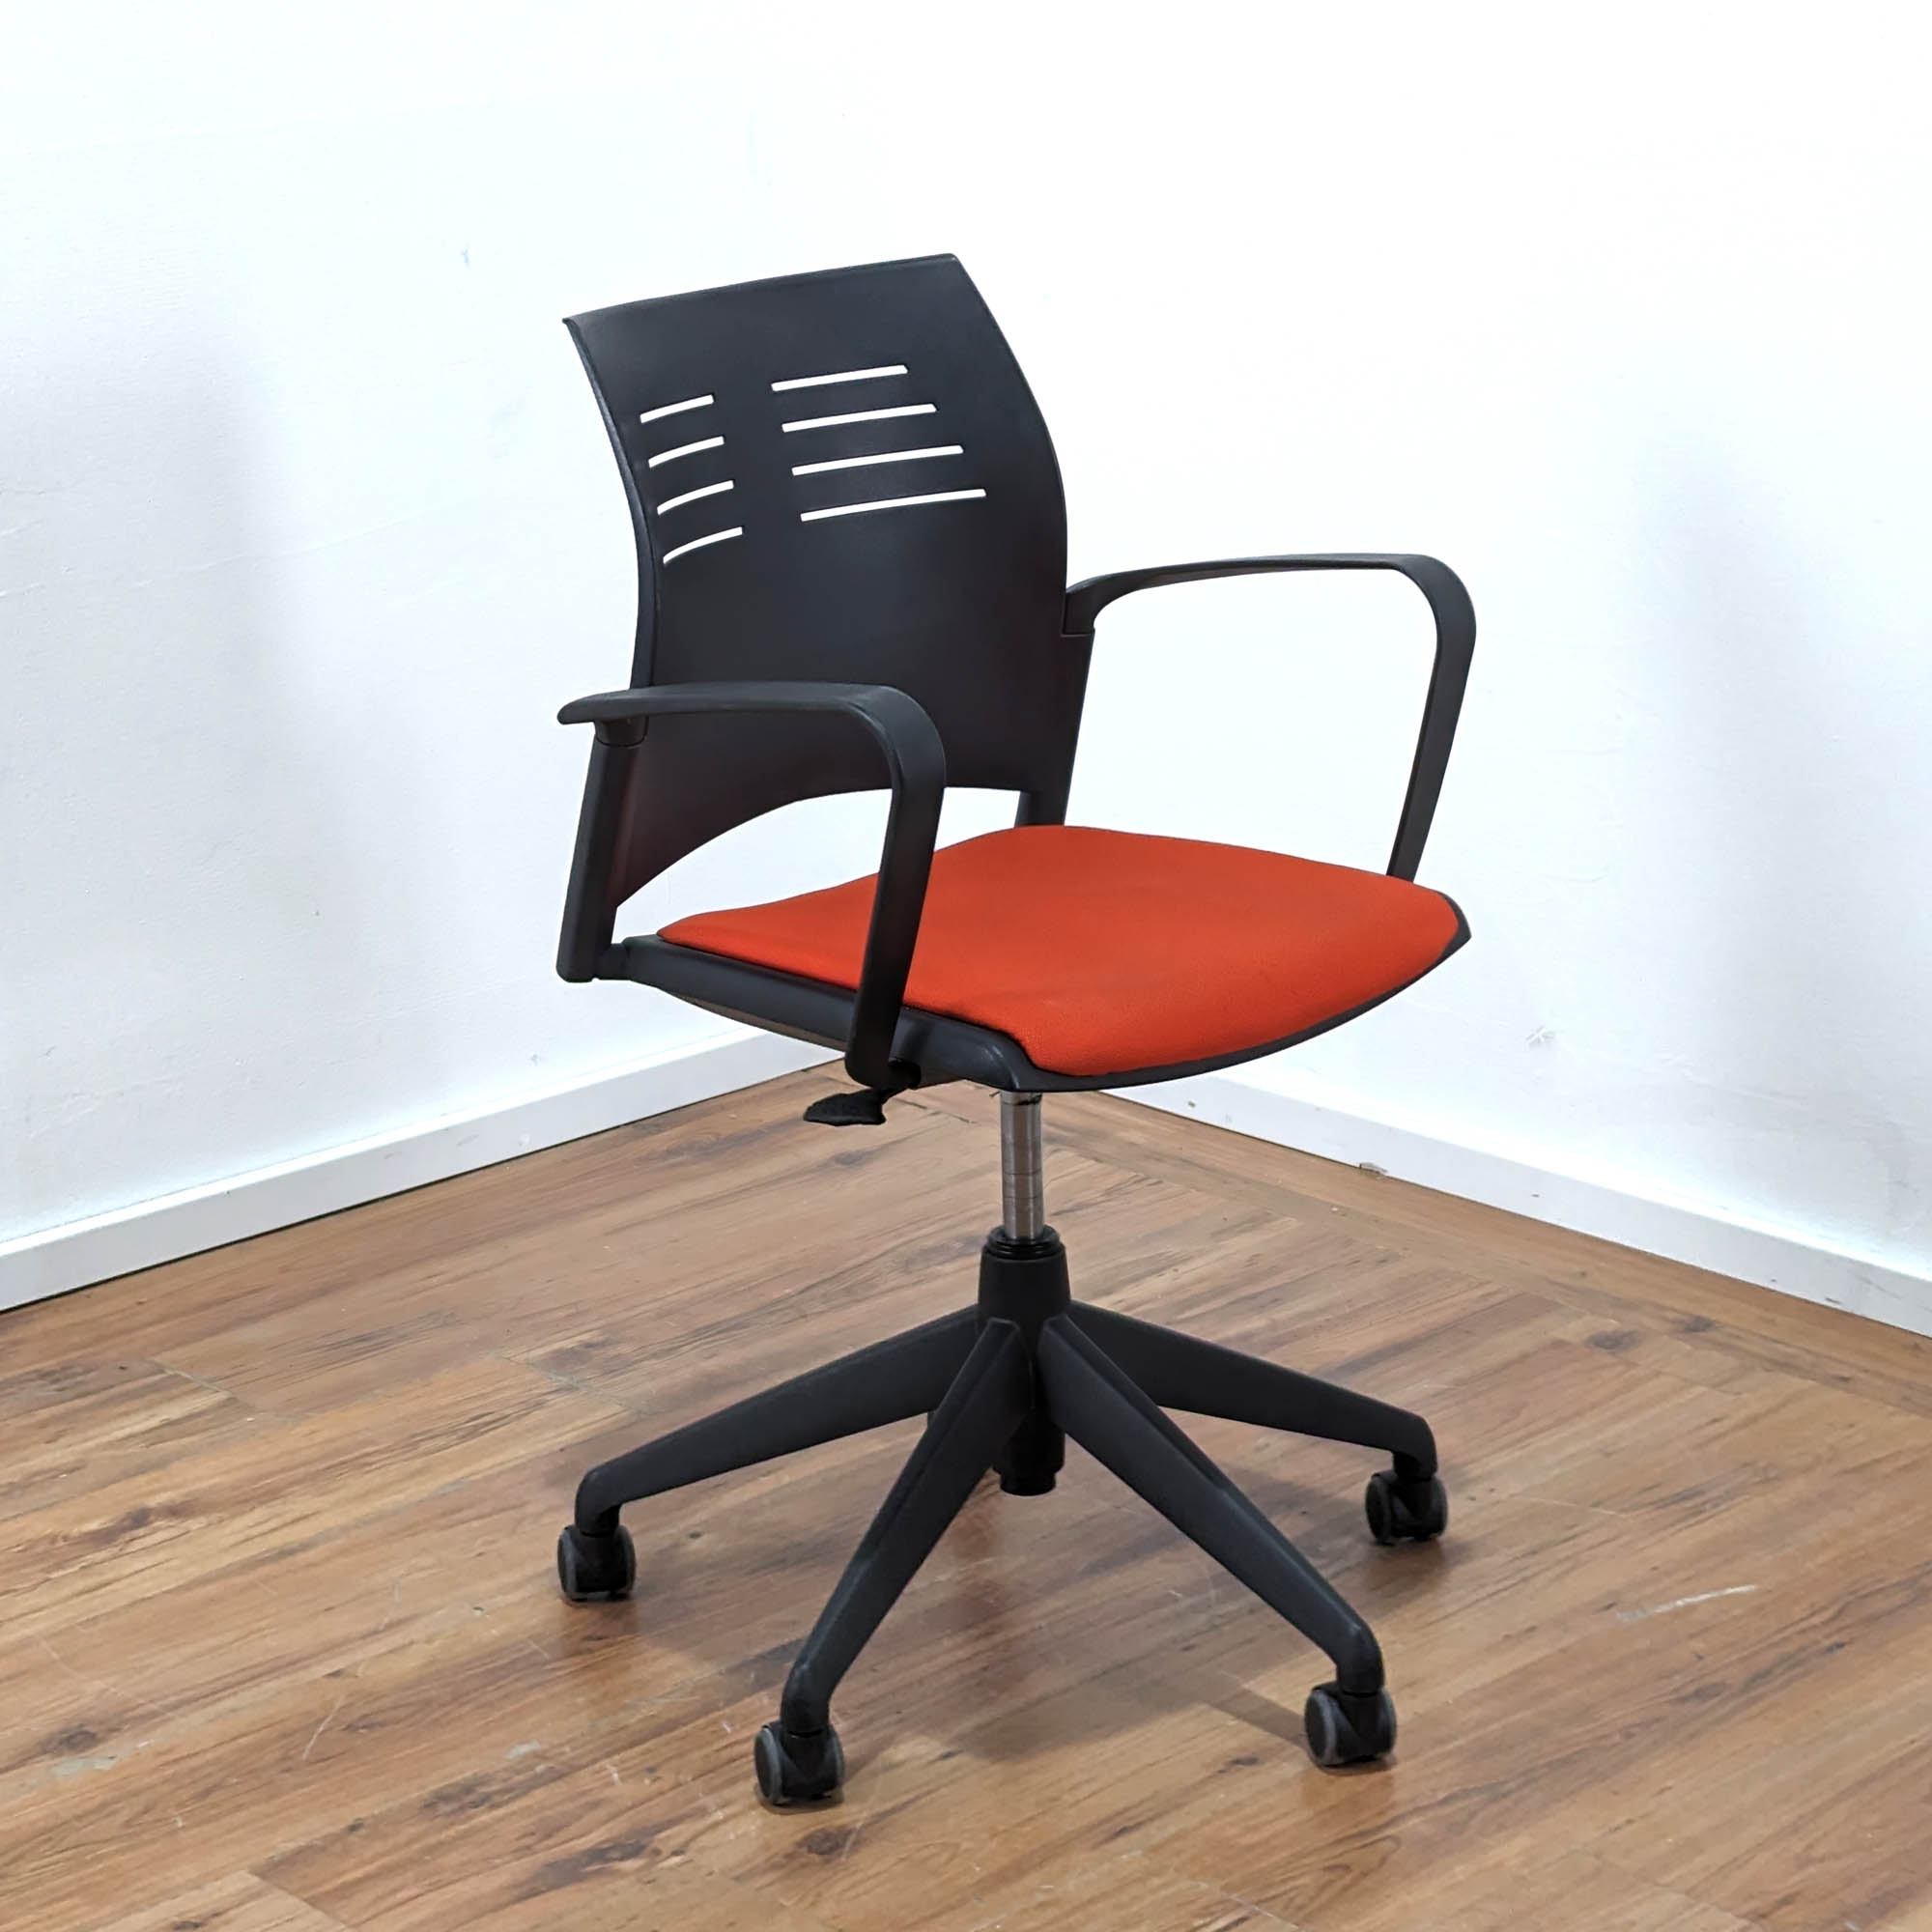 Konferenzstuhl "A-Spacio" auf Rollen - höhenverstellbar - Sitzpolster Stoff rot - Gestell schwarz - Armlehnen - Rückenlehne mit Belüftungsschlitzen